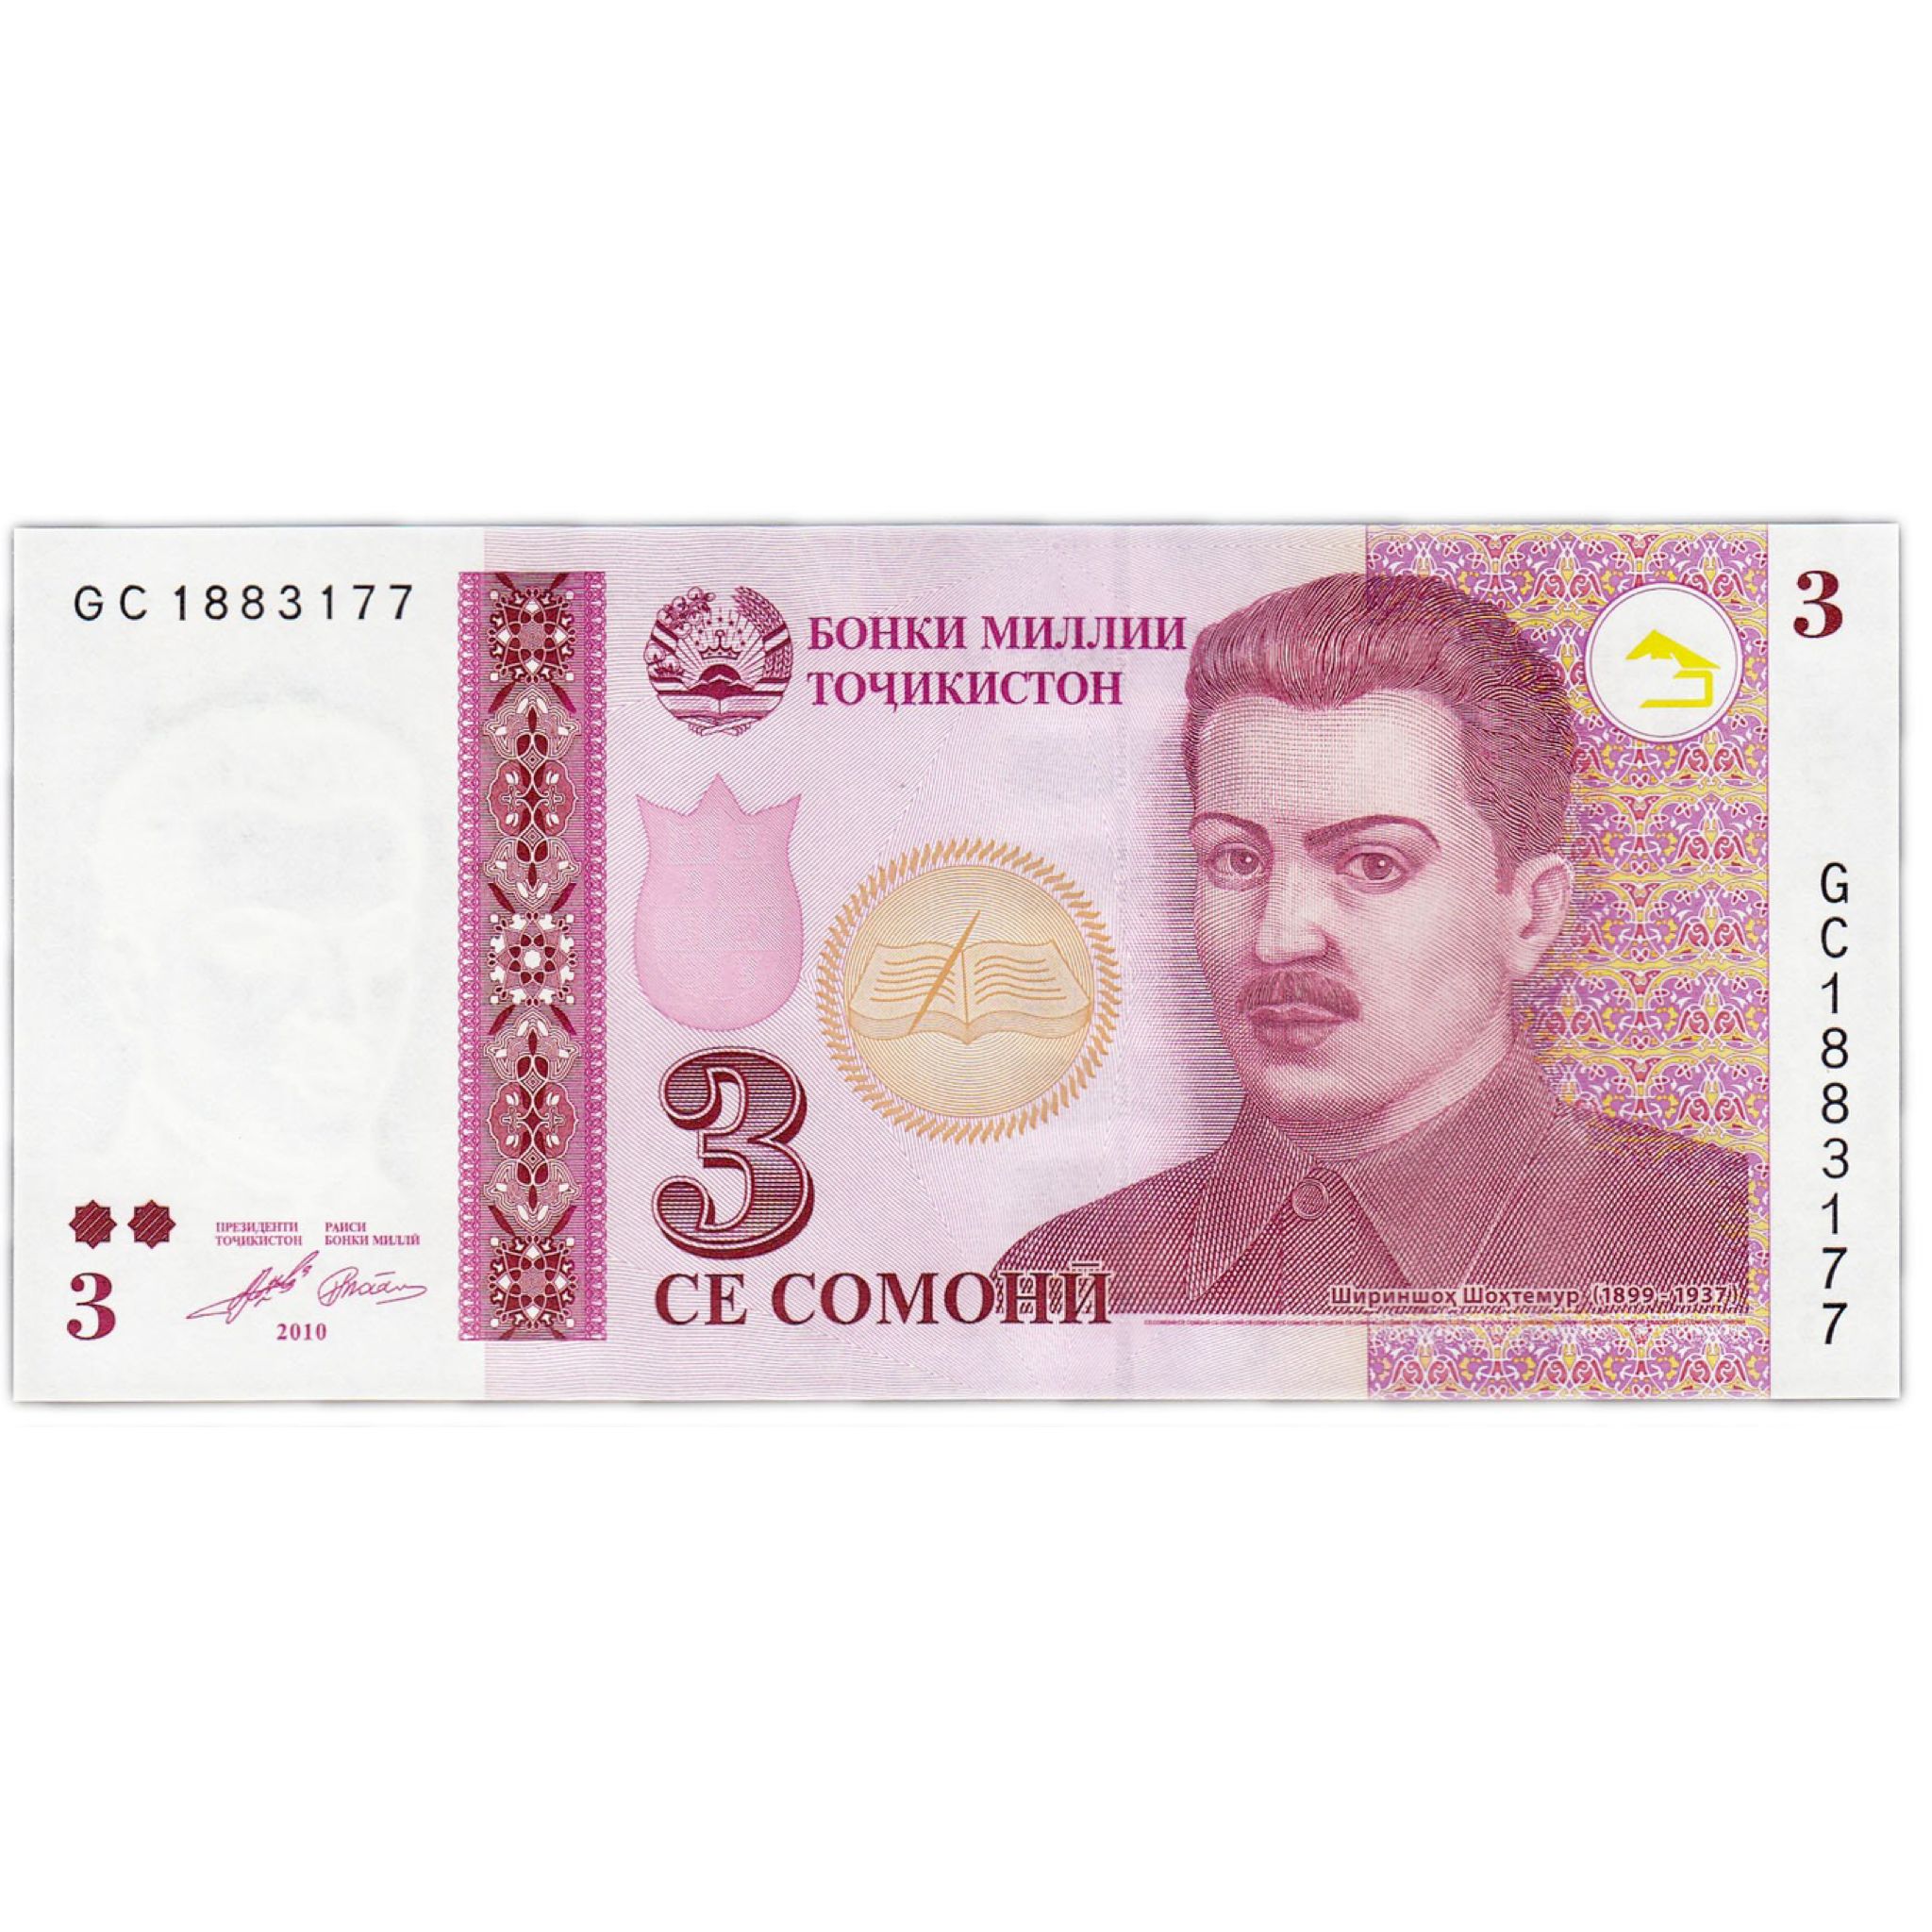 Таджикистан деньги в рублях. Деньги Таджикистана. Купюры Таджикистана. Таджикские банкноты. Денежные купюры Таджикистана.